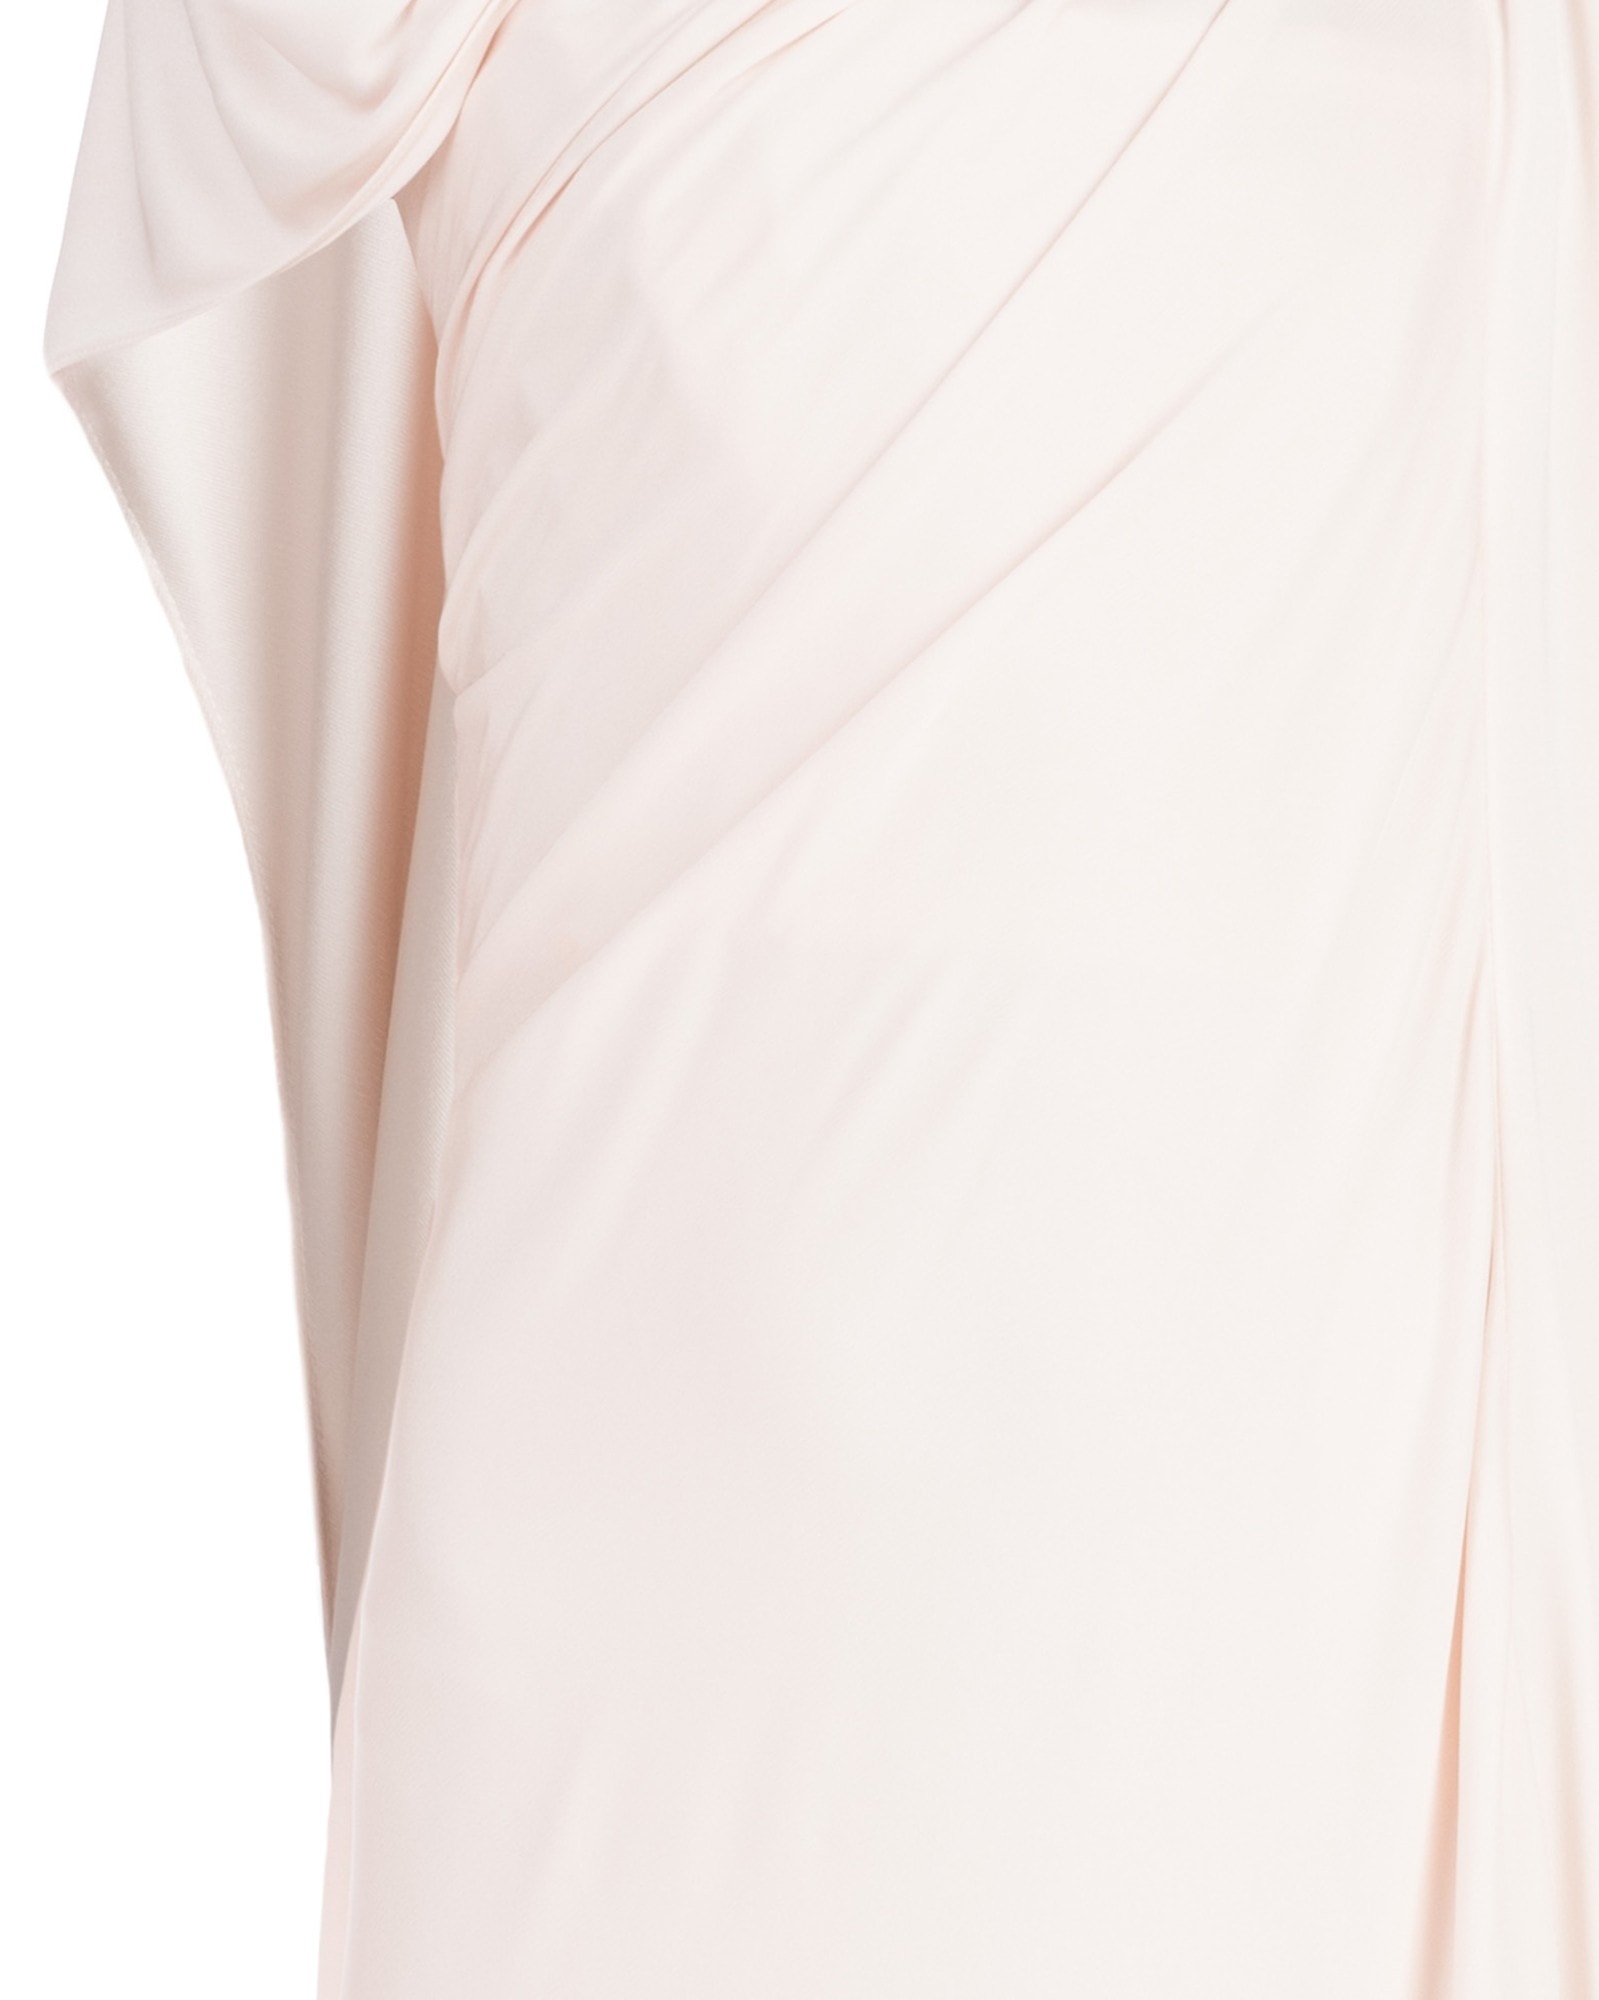 NOVA OCTO | Vintage Fluid Pale Pink Column Gown - Gowns - Dresses ...